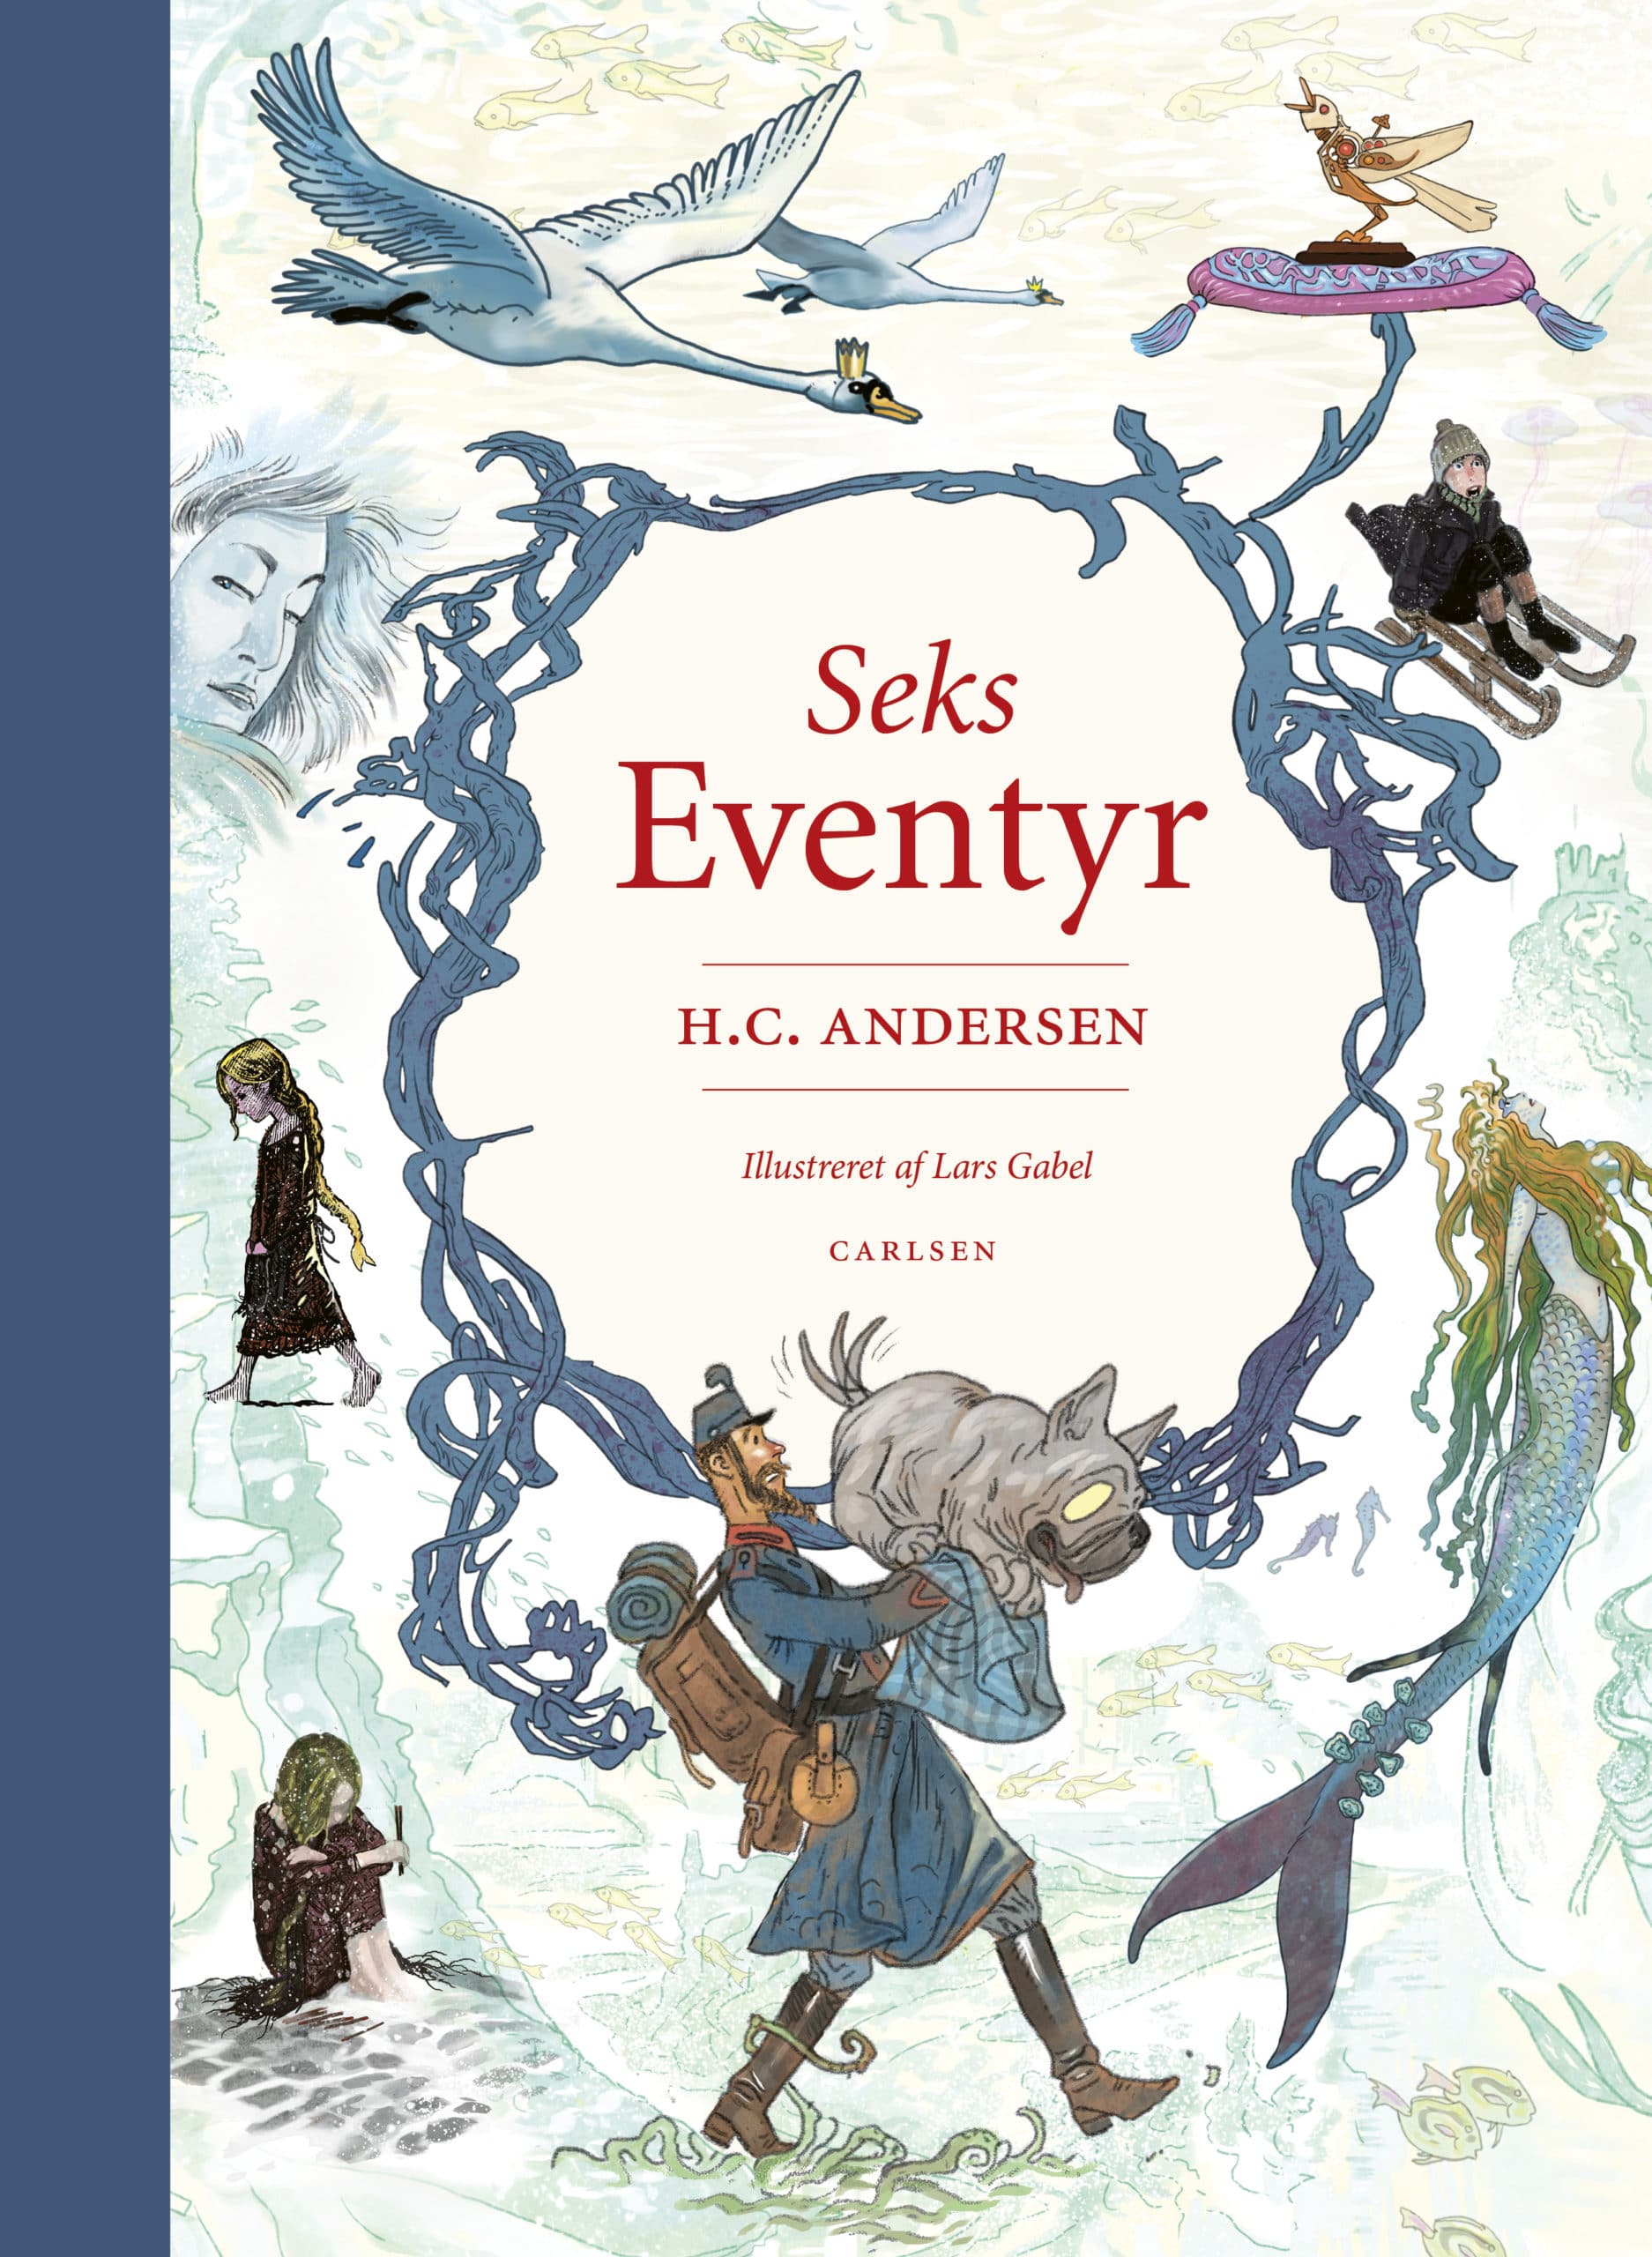 Seks eventyr, H.C. Andersen, populære bøger til små børn, Hans Christian Andersen